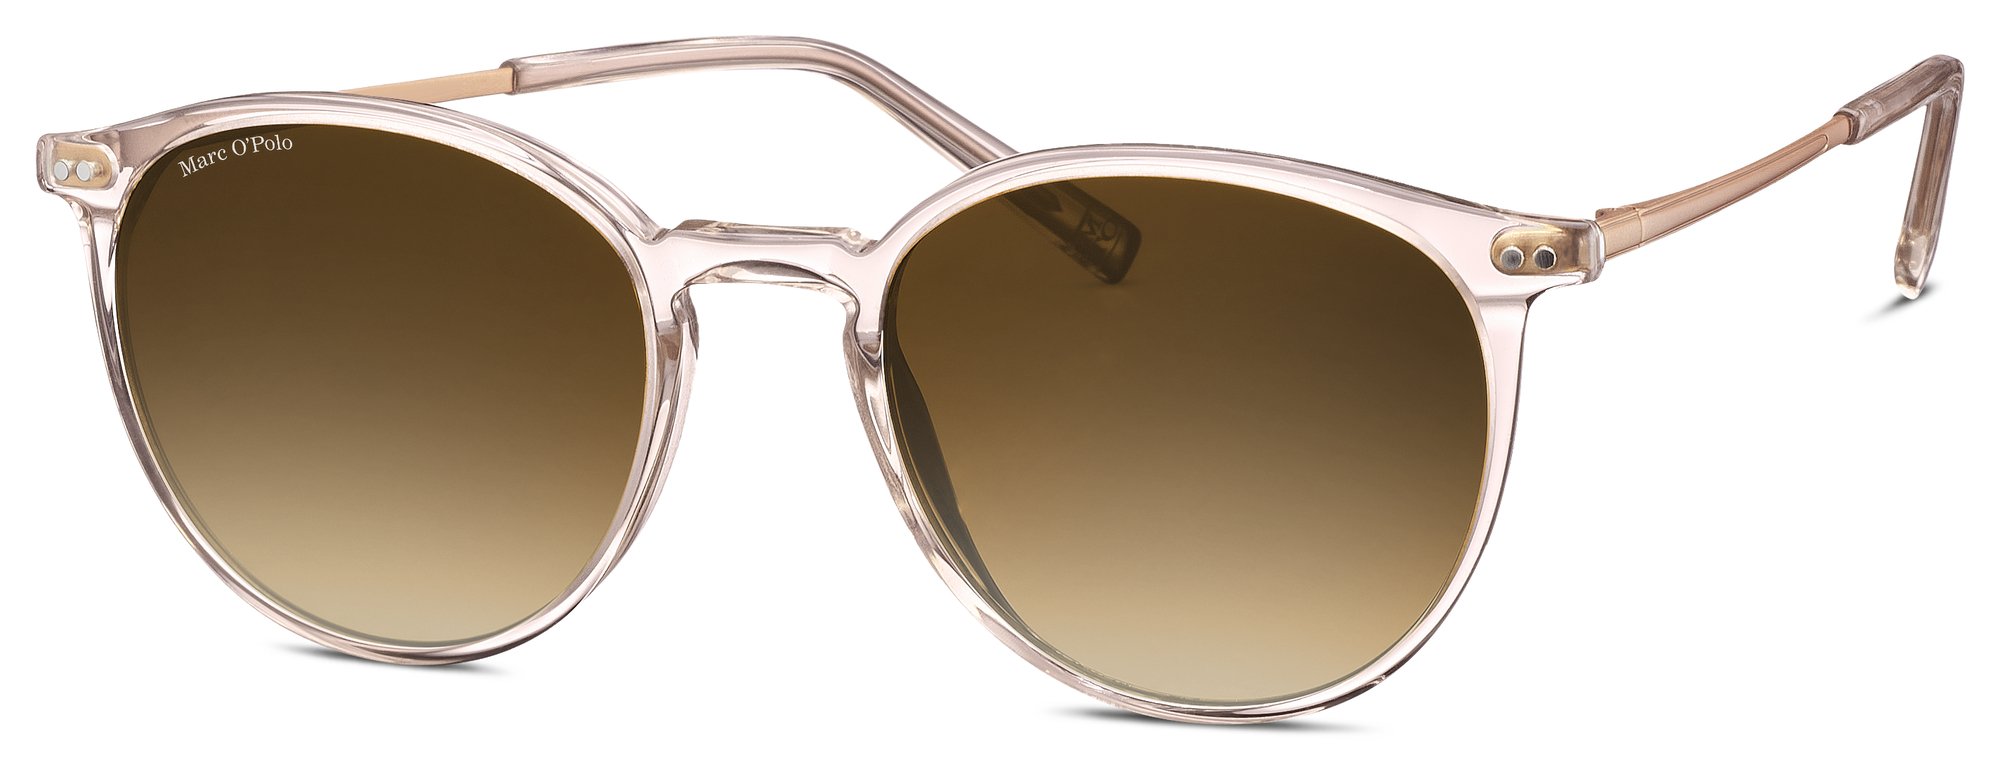 Das Bild zeigt die Sonnenbrille 506183 80 von der Marke Marc O‘Polo in nude transparent.